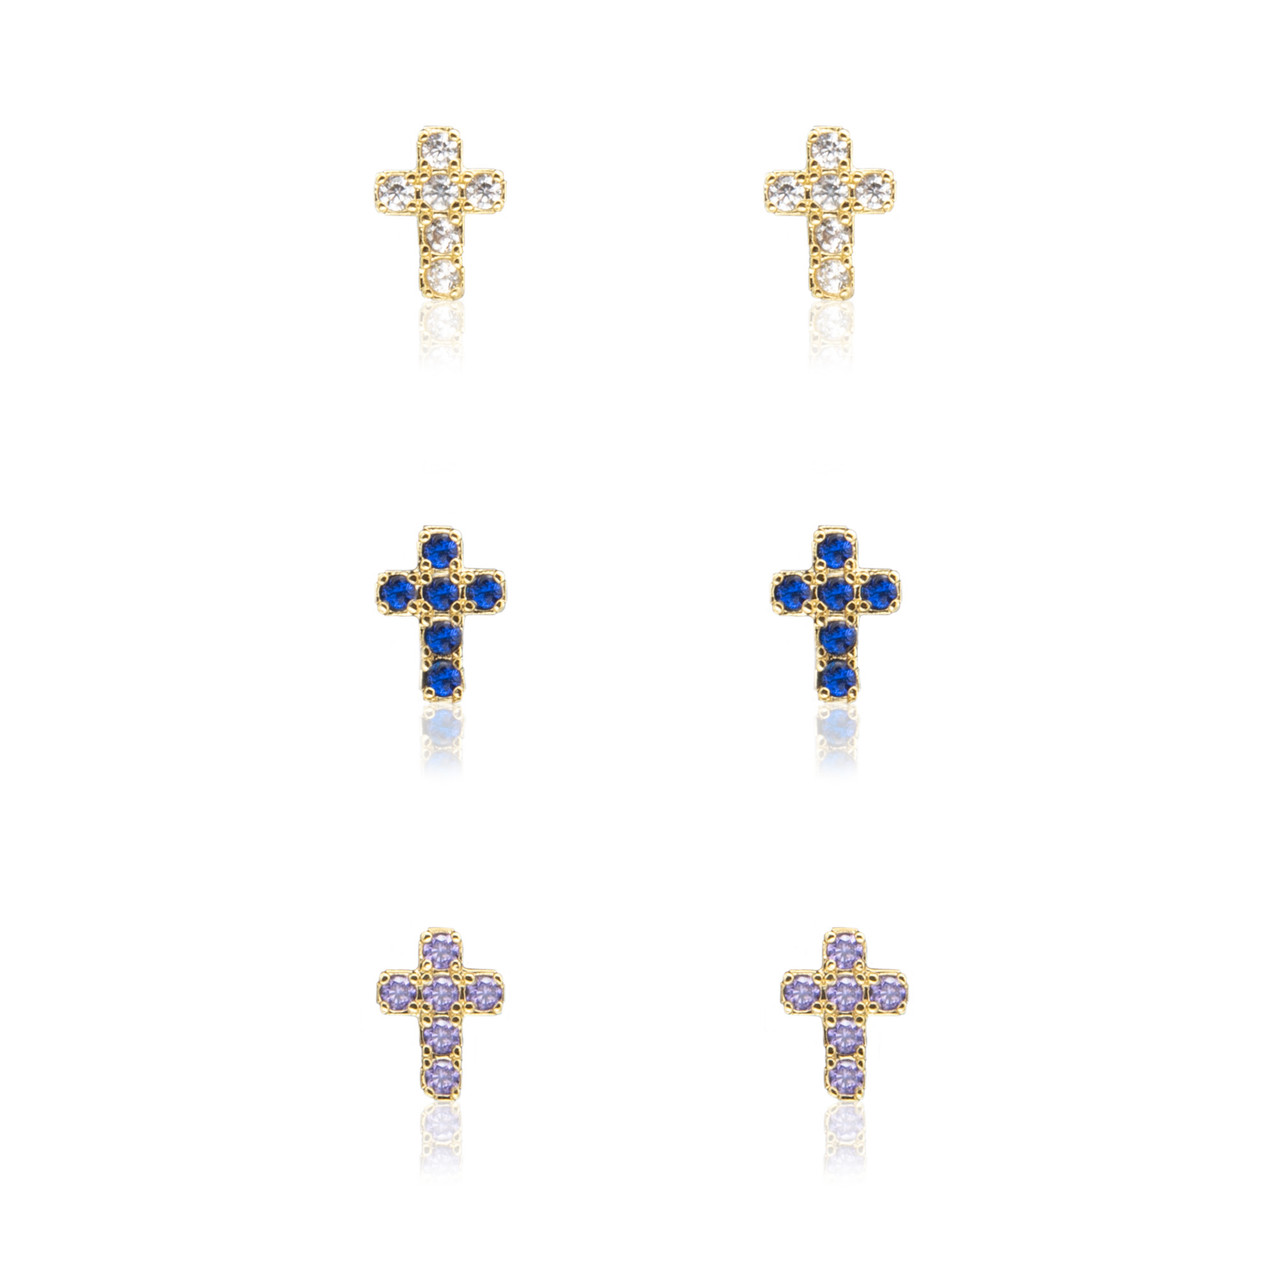 Set of 3 Crystal Cross Earrings